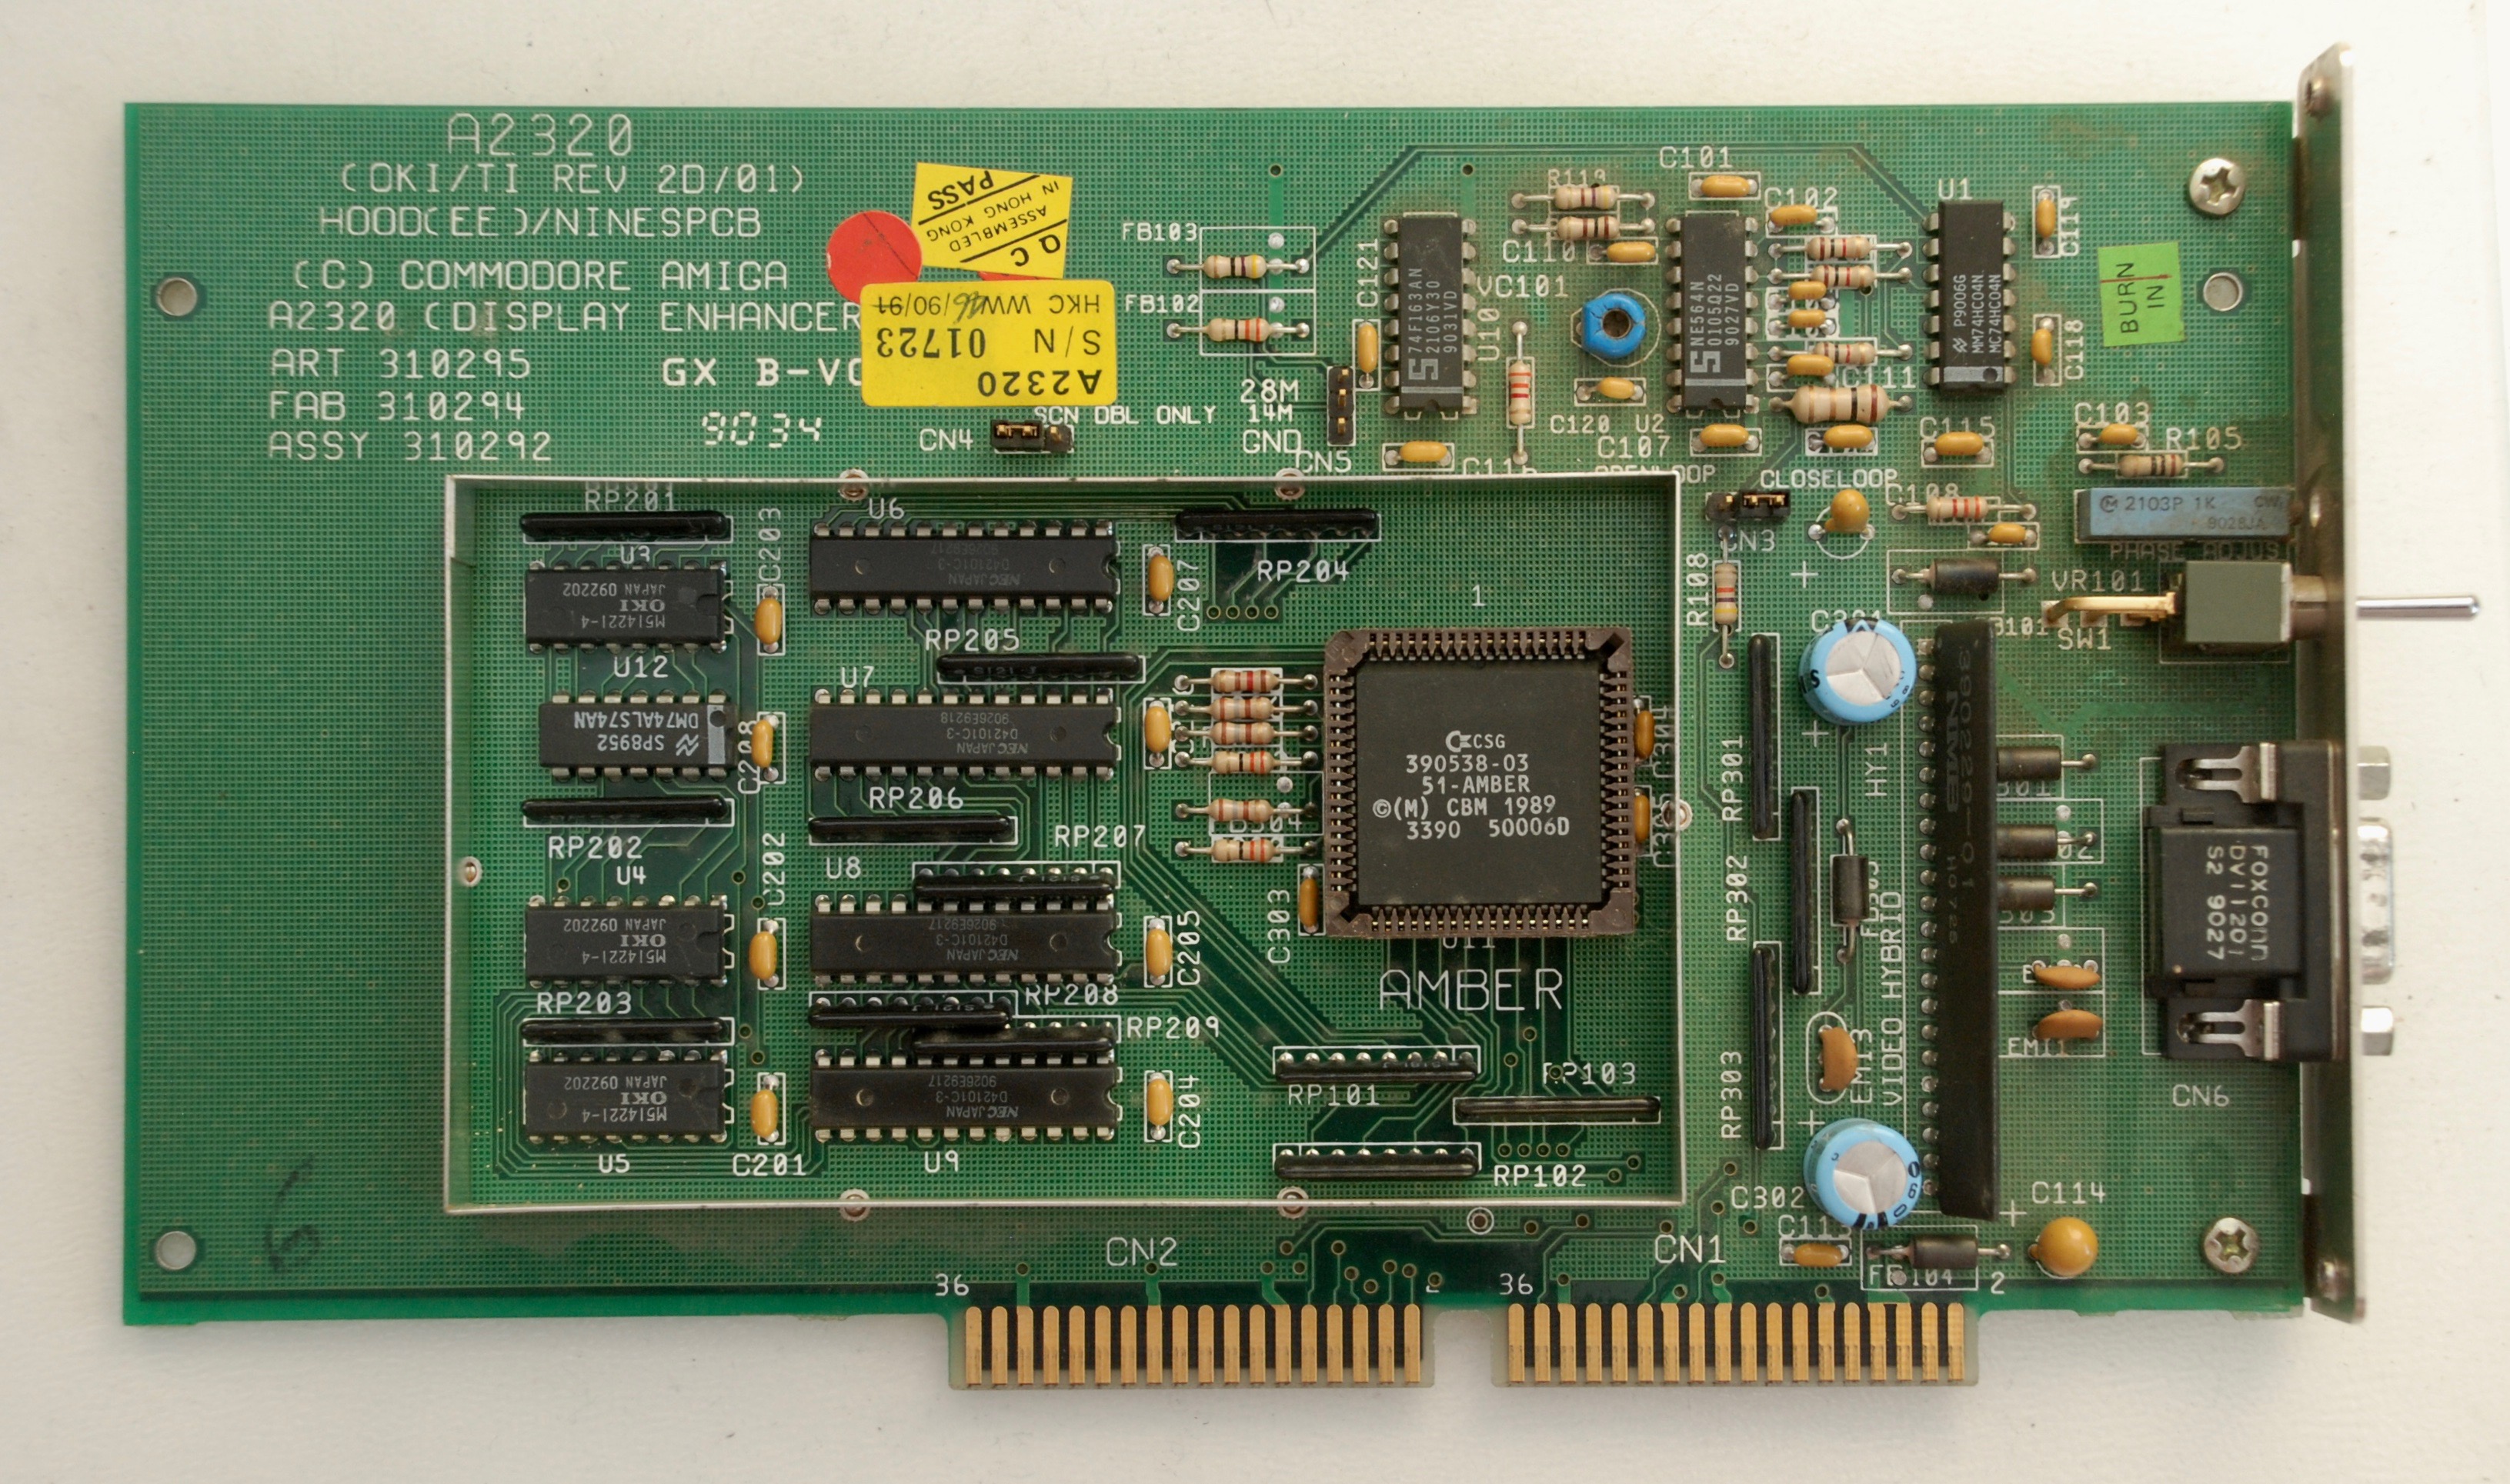 Commodore Amiga 2000 PAL 動作確認済み - デスクトップ型PC